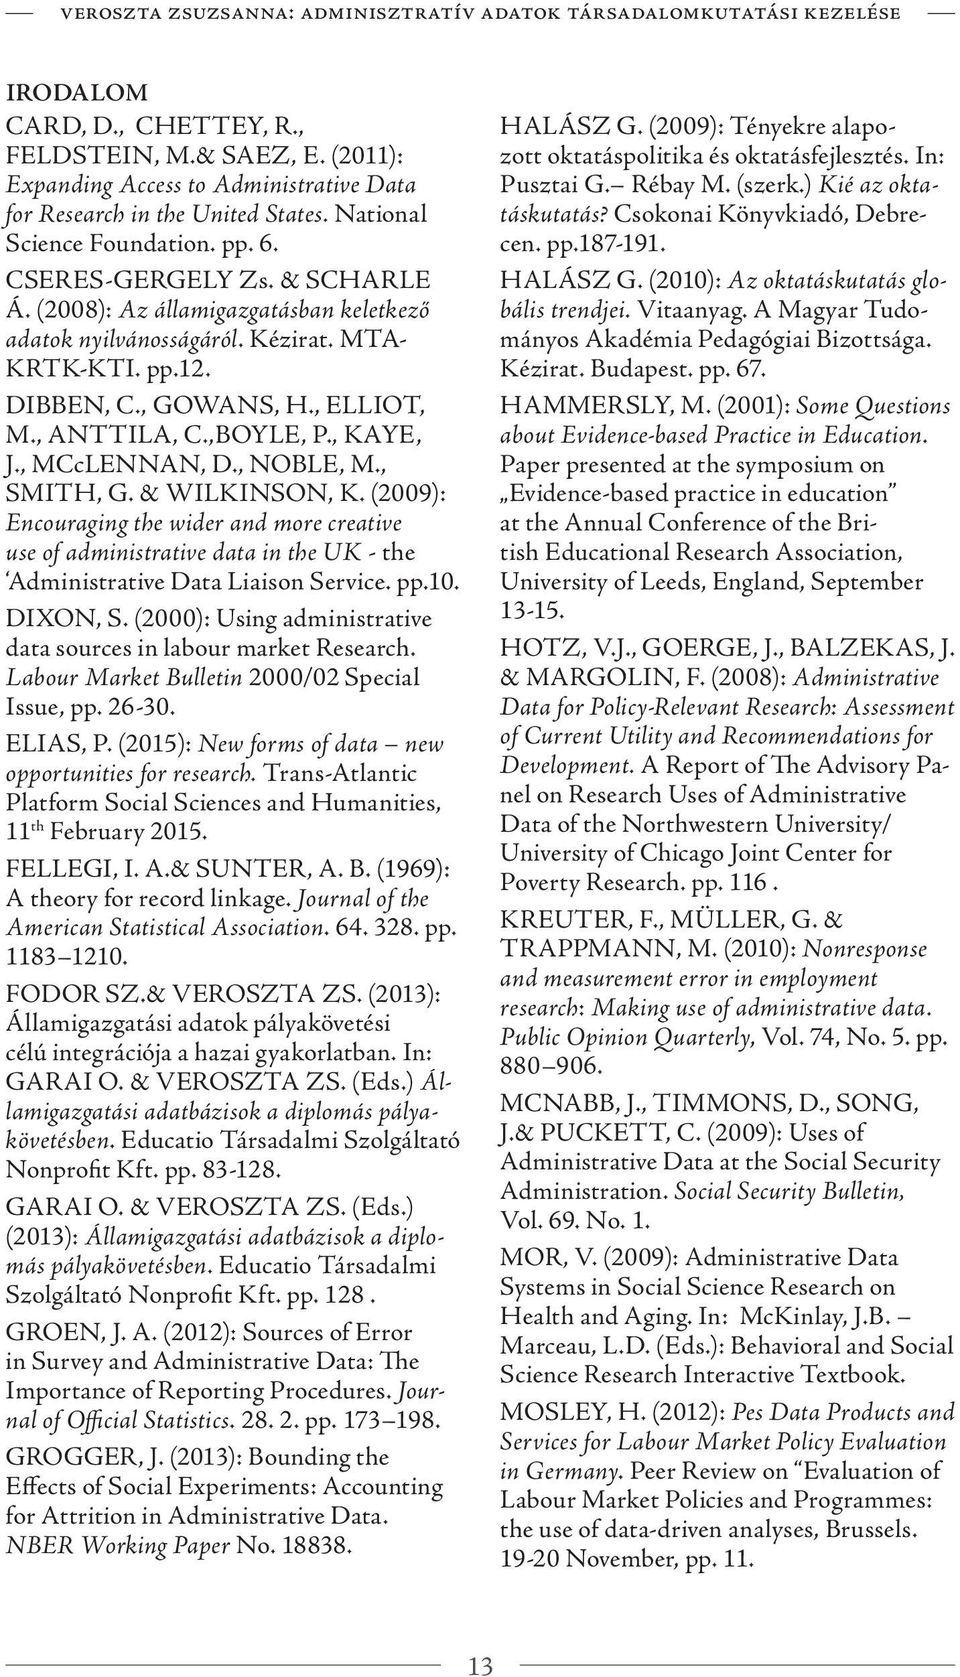 (2008): Az államigazgatásban keletkező adatok nyilvánosságáról. Kézirat. MTA- KRTK-KTI. pp.12. DIBBEN, C., GOWANS, H., ELLIOT, M., ANTTILA, C.,BOYLE, P., KAYE, J., MCcLENNAN, D., NOBLE, M., SMITH, G.